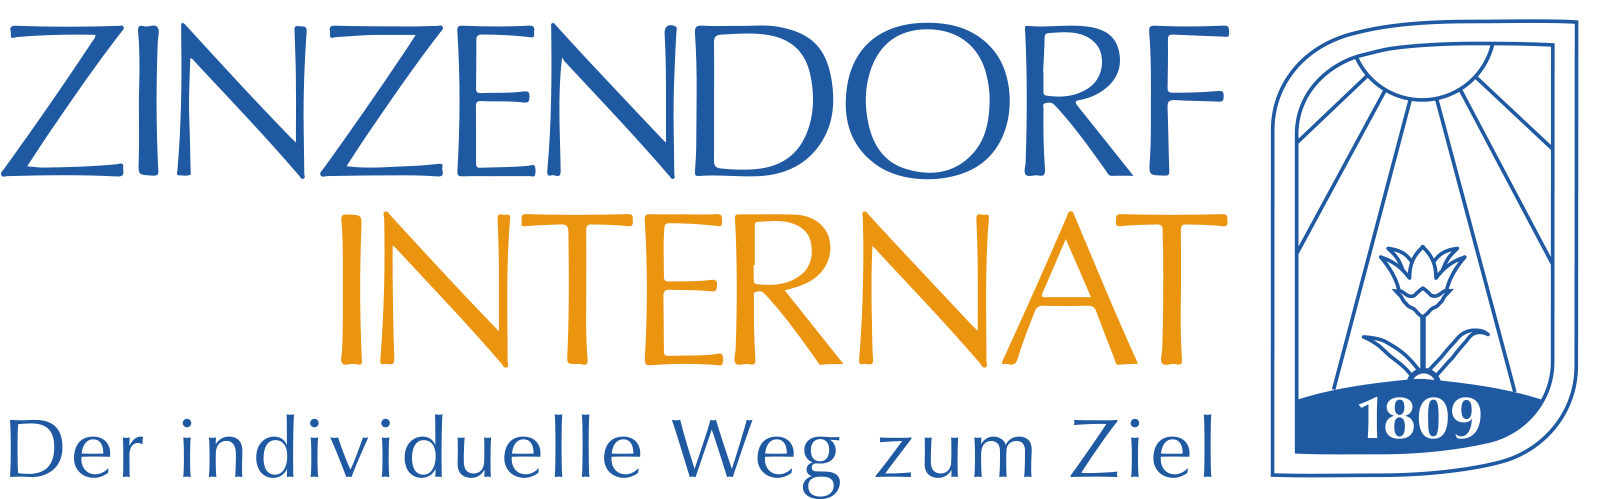 Zinzendorfinternat Logo